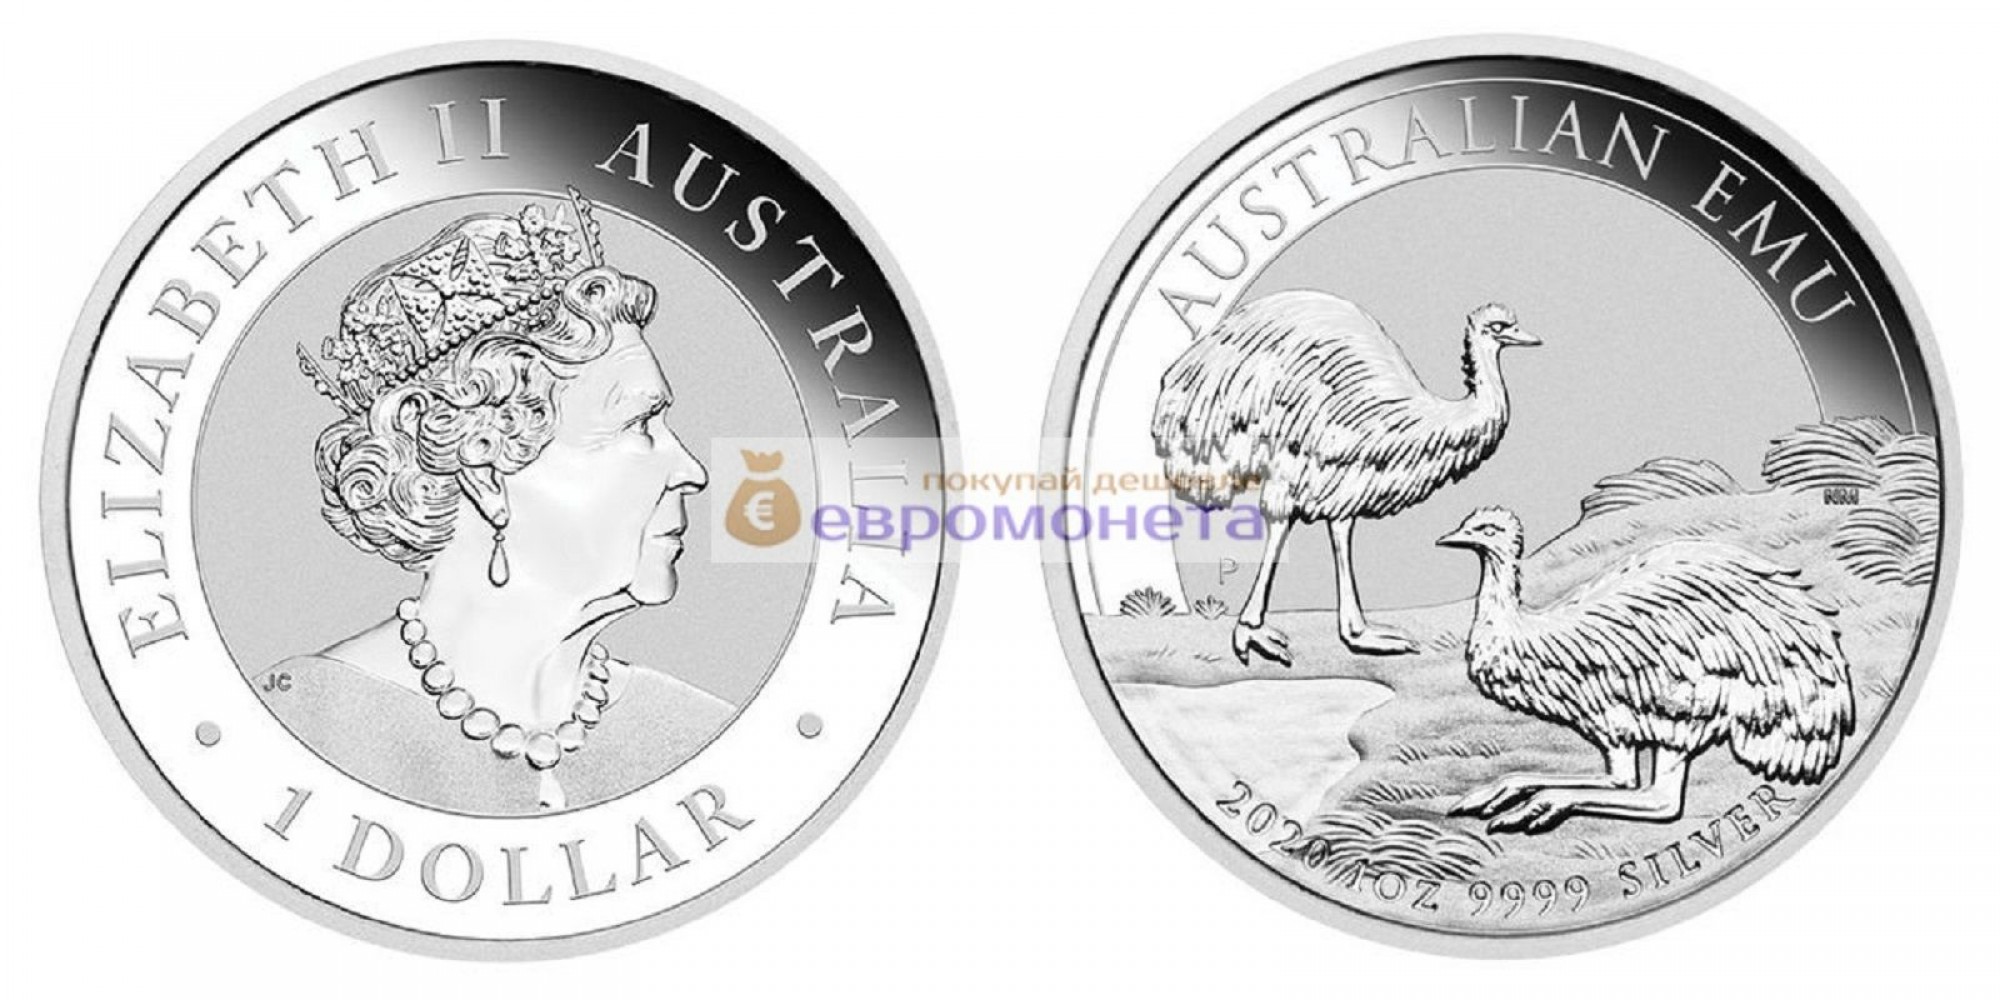 Австралия 1 доллар 2020 год Австралийский Эму. Серебро унция 999 пробы. Тираж 30 000 шт.